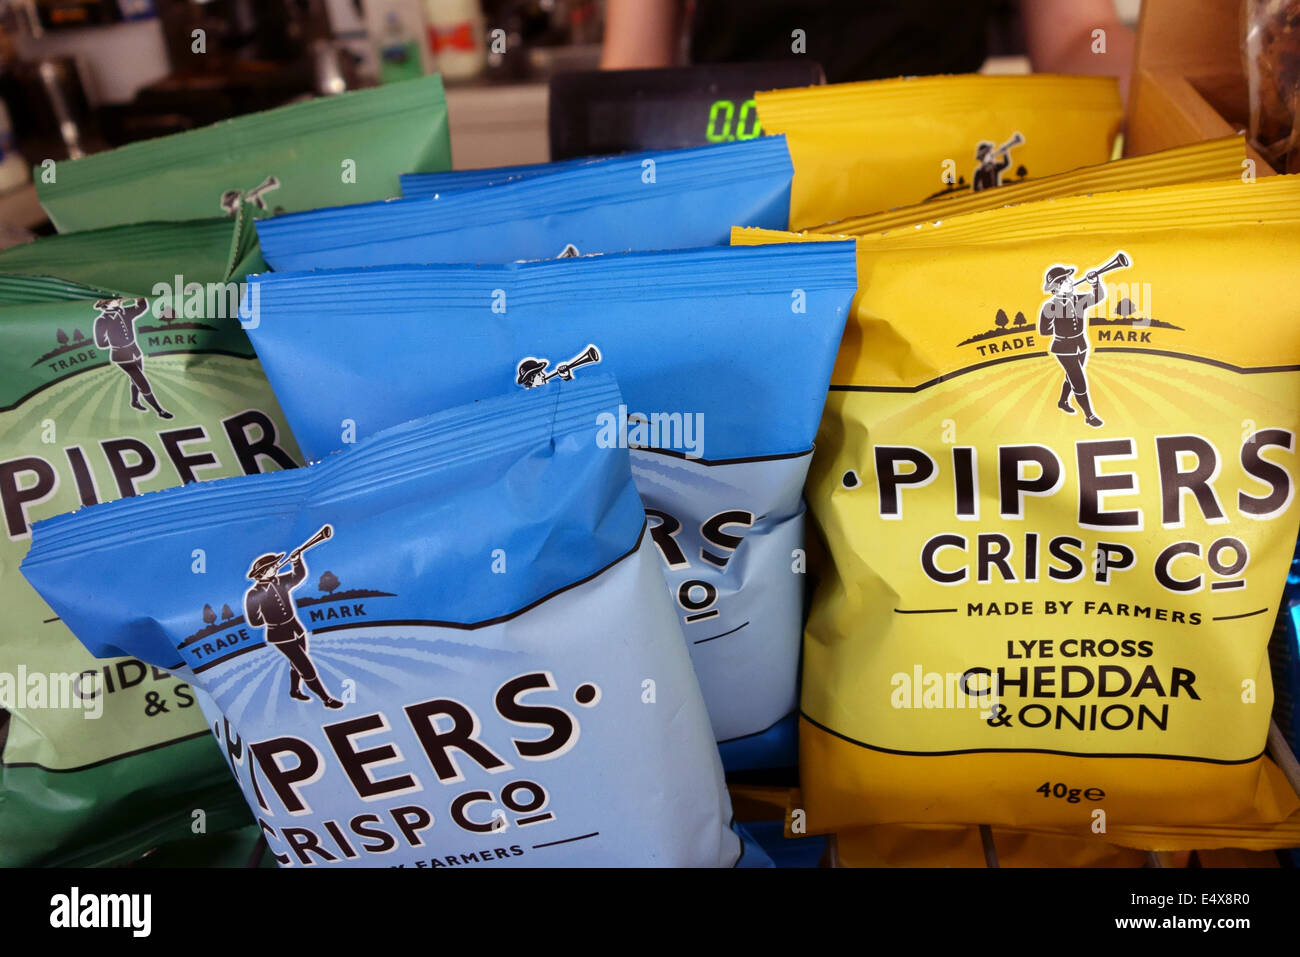 Pipers crujientes patatas fritas de marca conjunta a la venta en café, Inglaterra Foto de stock